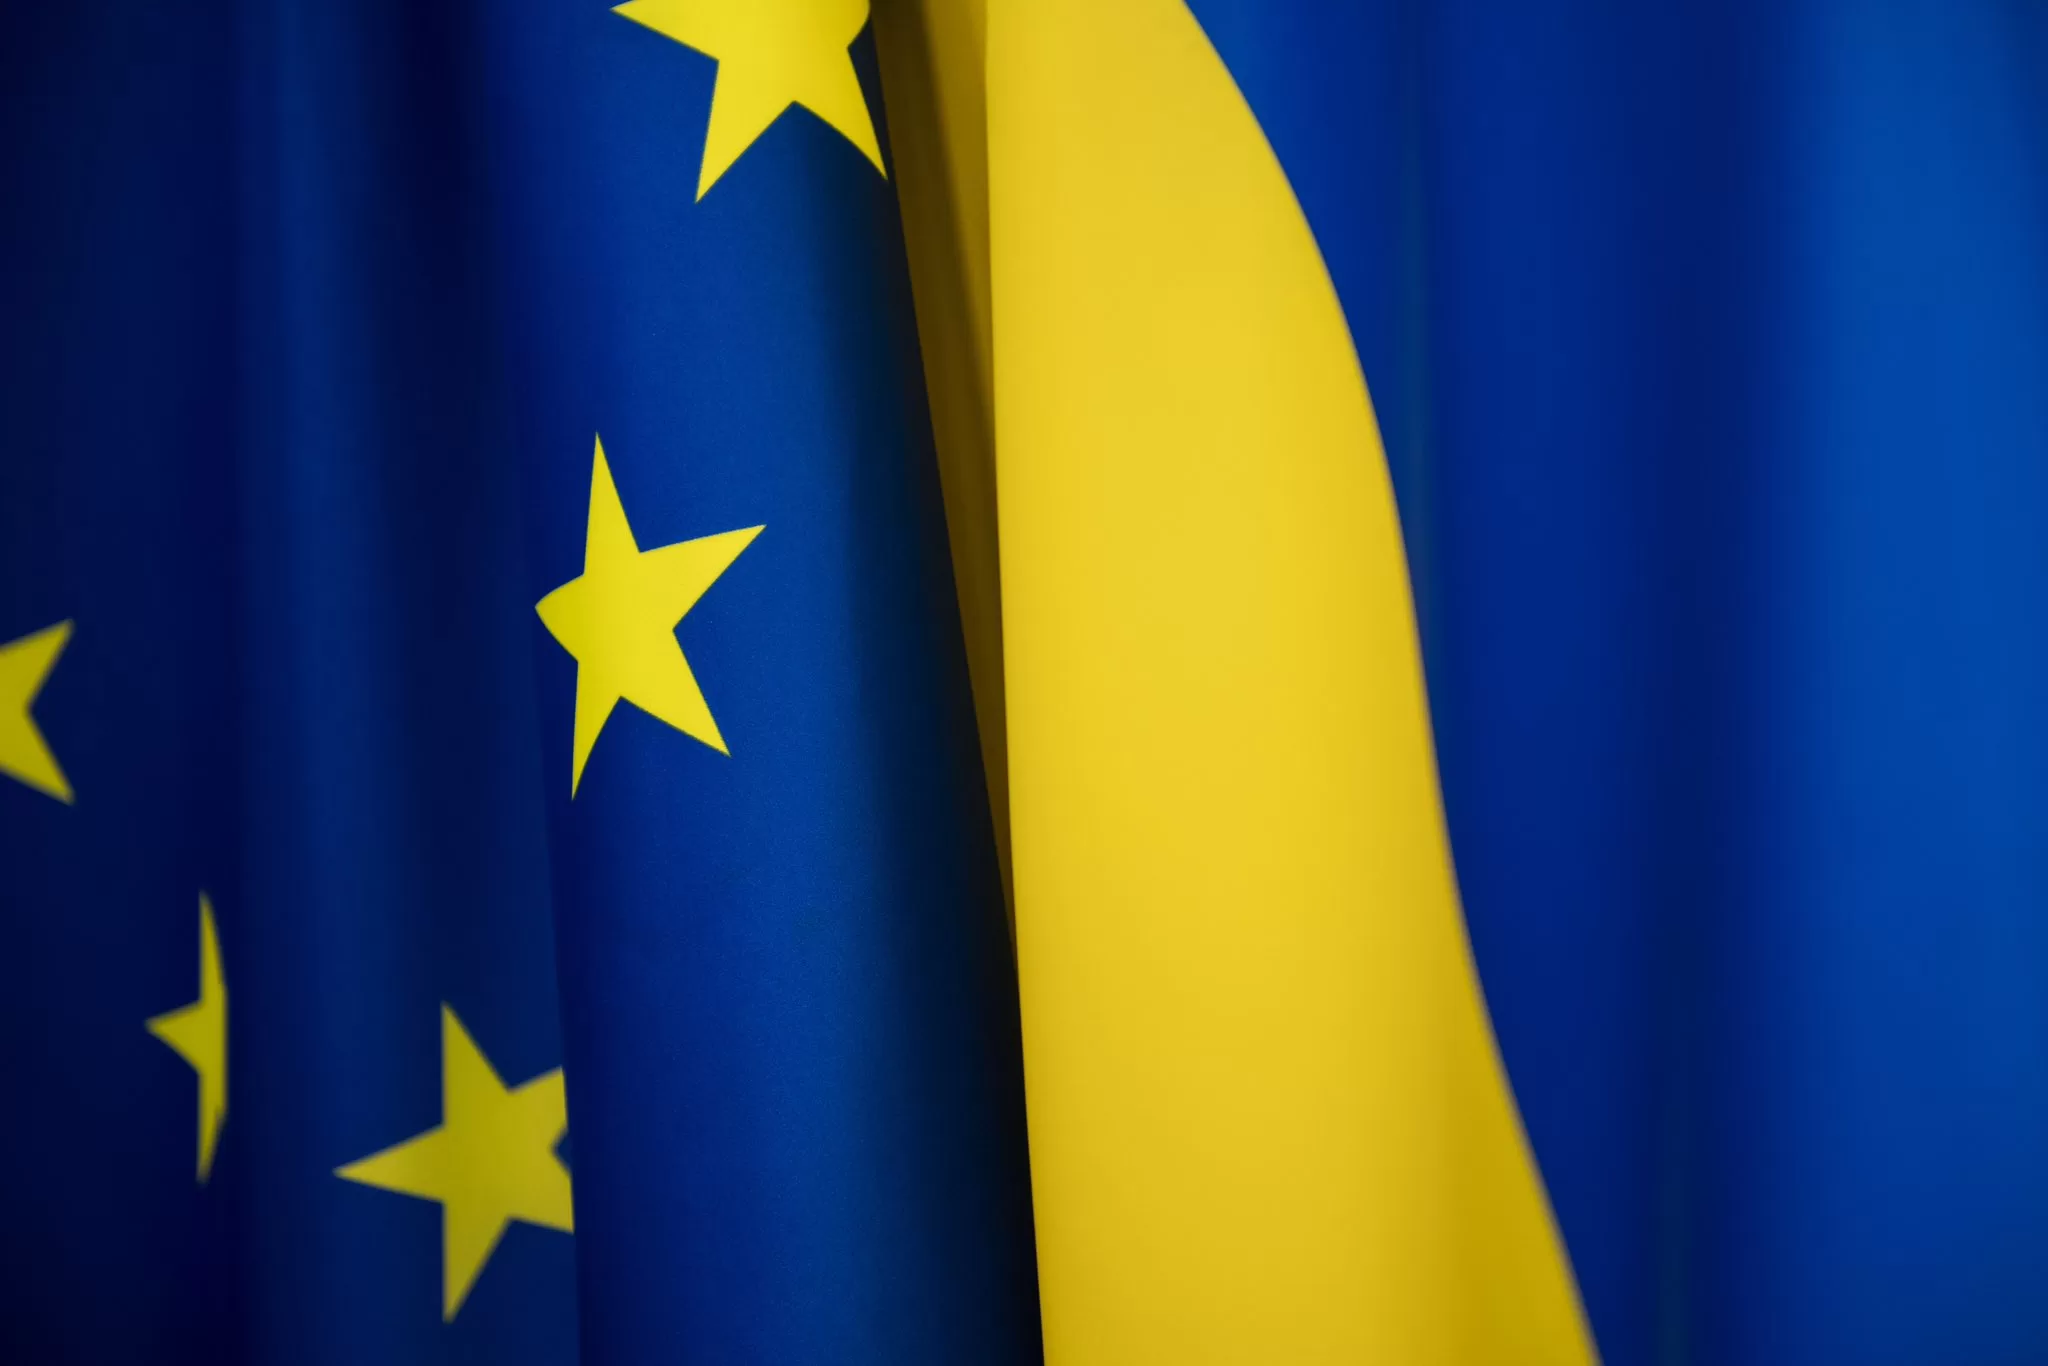 यूरोपीय संघ और उसके सदस्य देश यूक्रेन के समर्थन में एकजुट हुए।